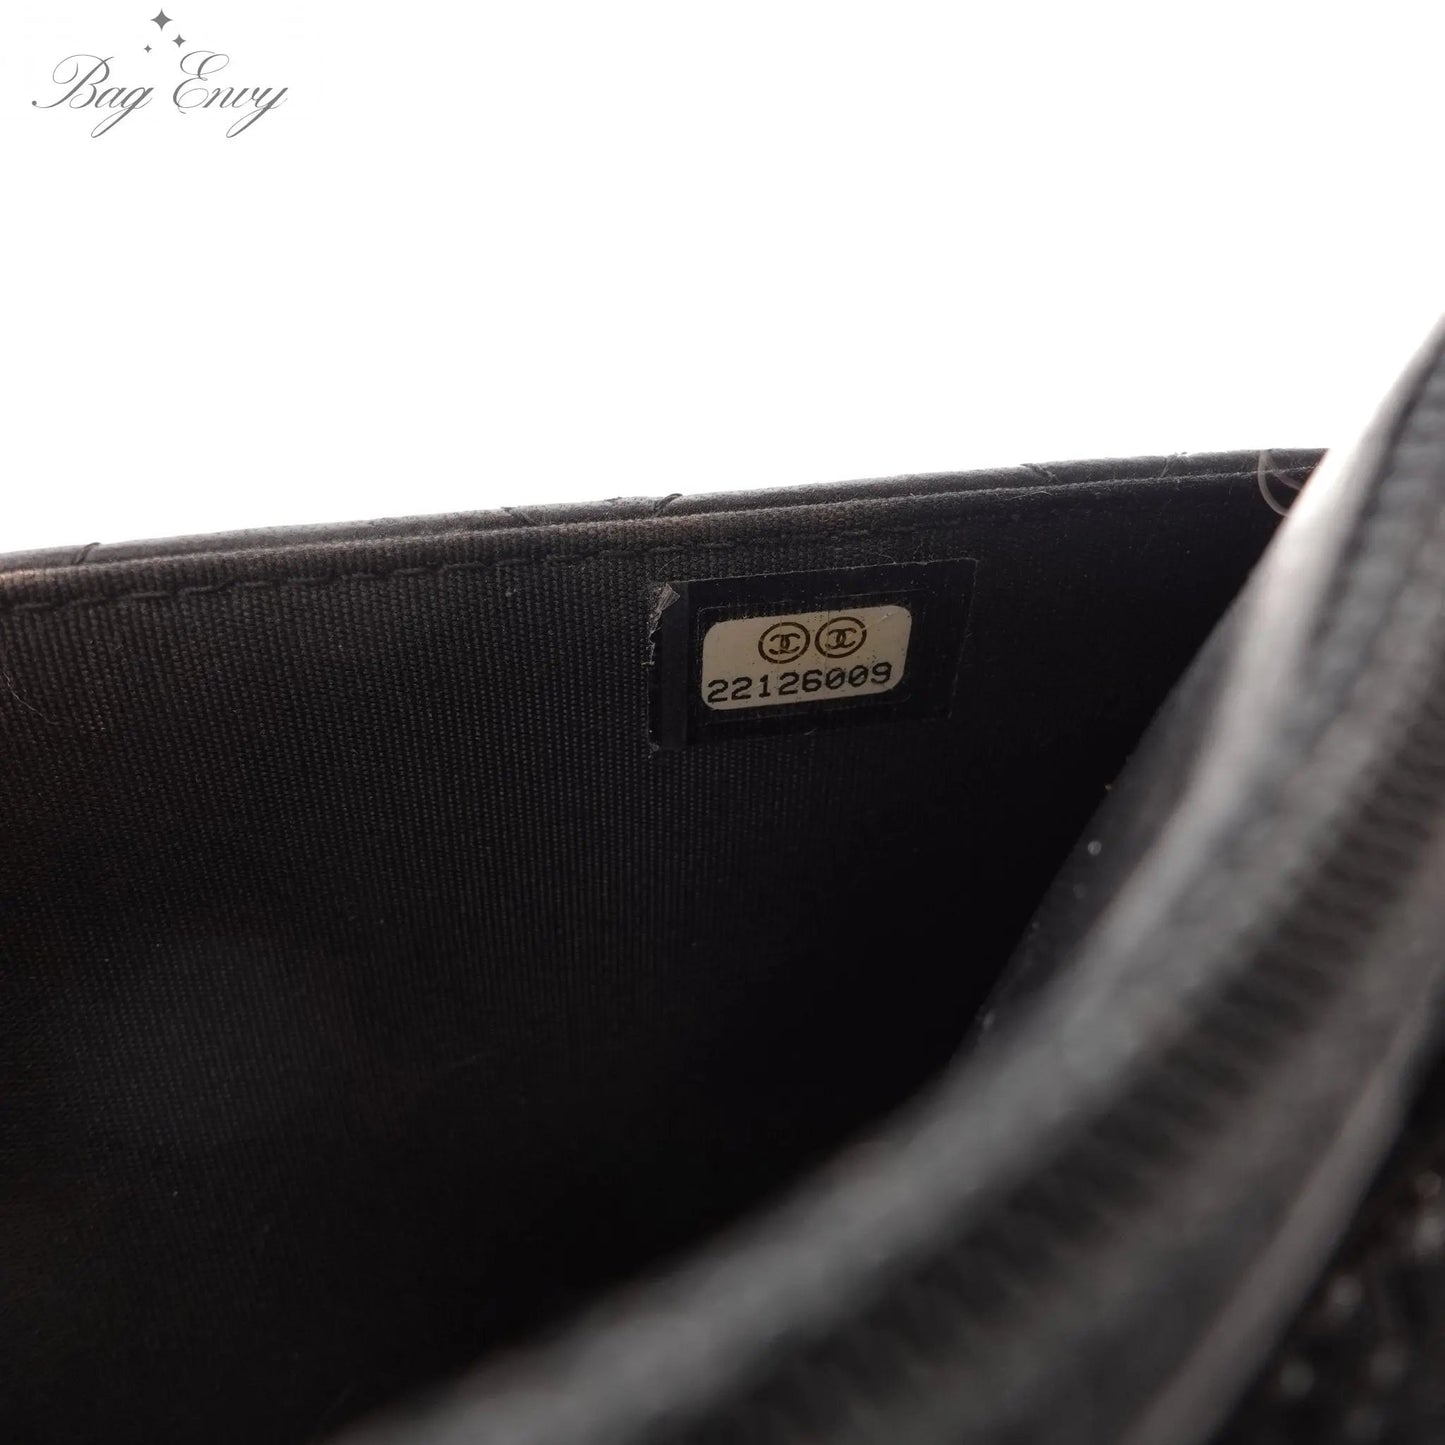 CHANEL Lambskin Leather Boy Wallet on Chain - Bag Envy